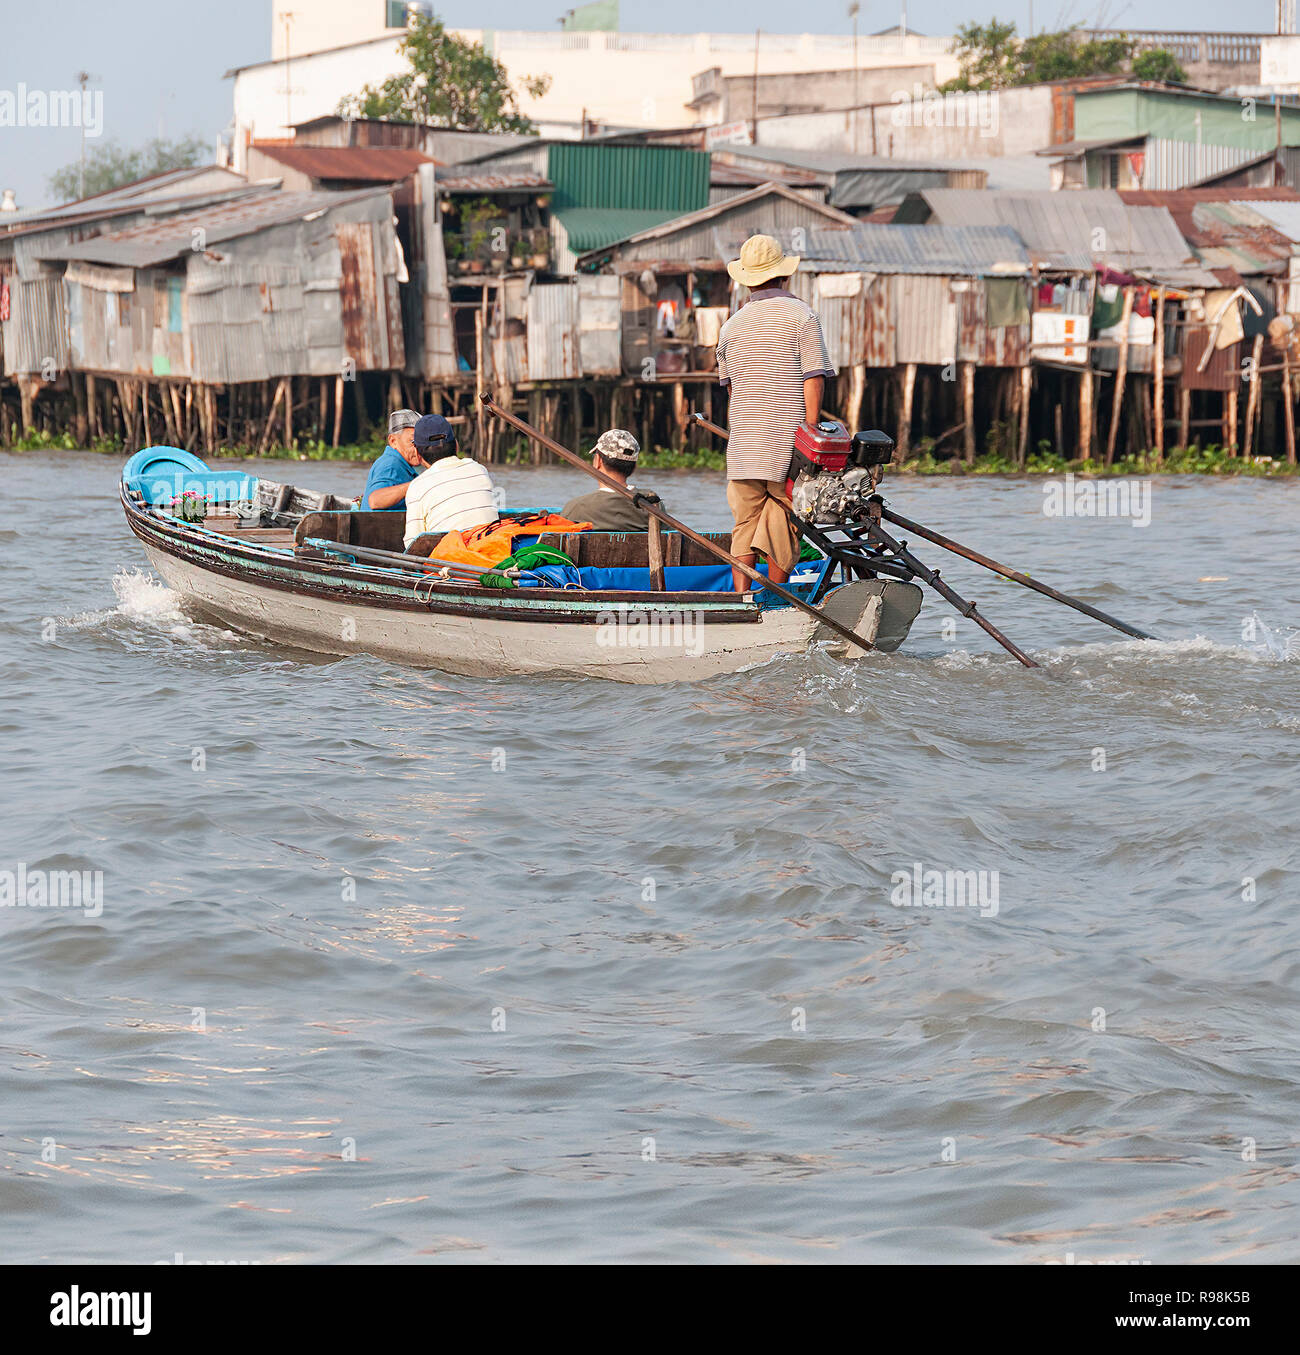 Trois touristes masculins étant prises par les petits bateau à moteur pour visiter le célèbre marché flottant de Cai Rang, Cai Rang,la rivière Can Tho Province, Vietnam Banque D'Images